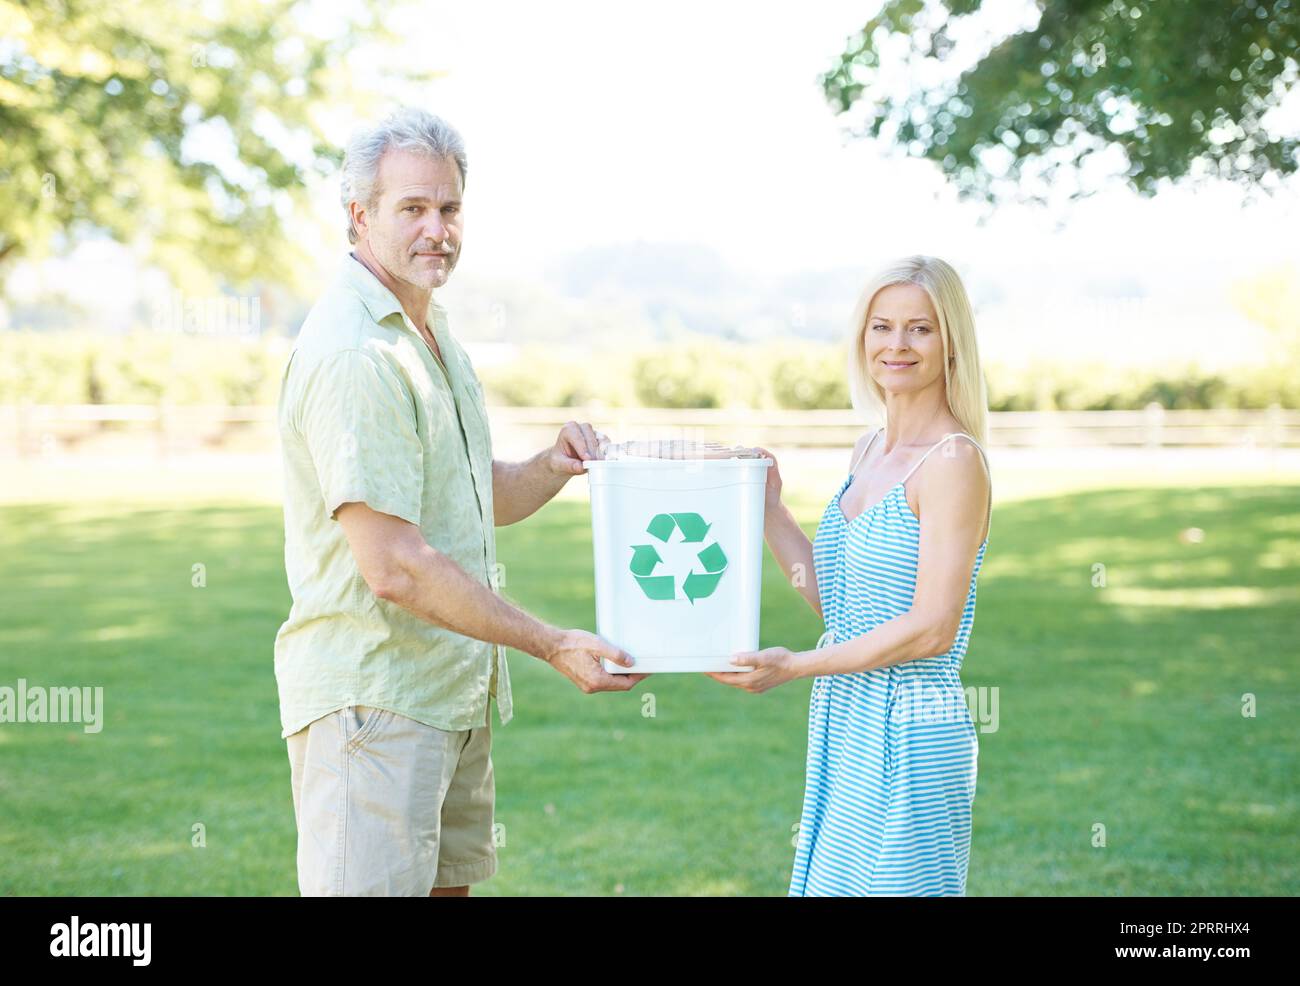 Die Erde retten - eine Flasche nach der anderen. Ein glückliches Paar, das in einem Park steht und einen Recyclingbehälter hält und die Kamera anlächelt. Stockfoto